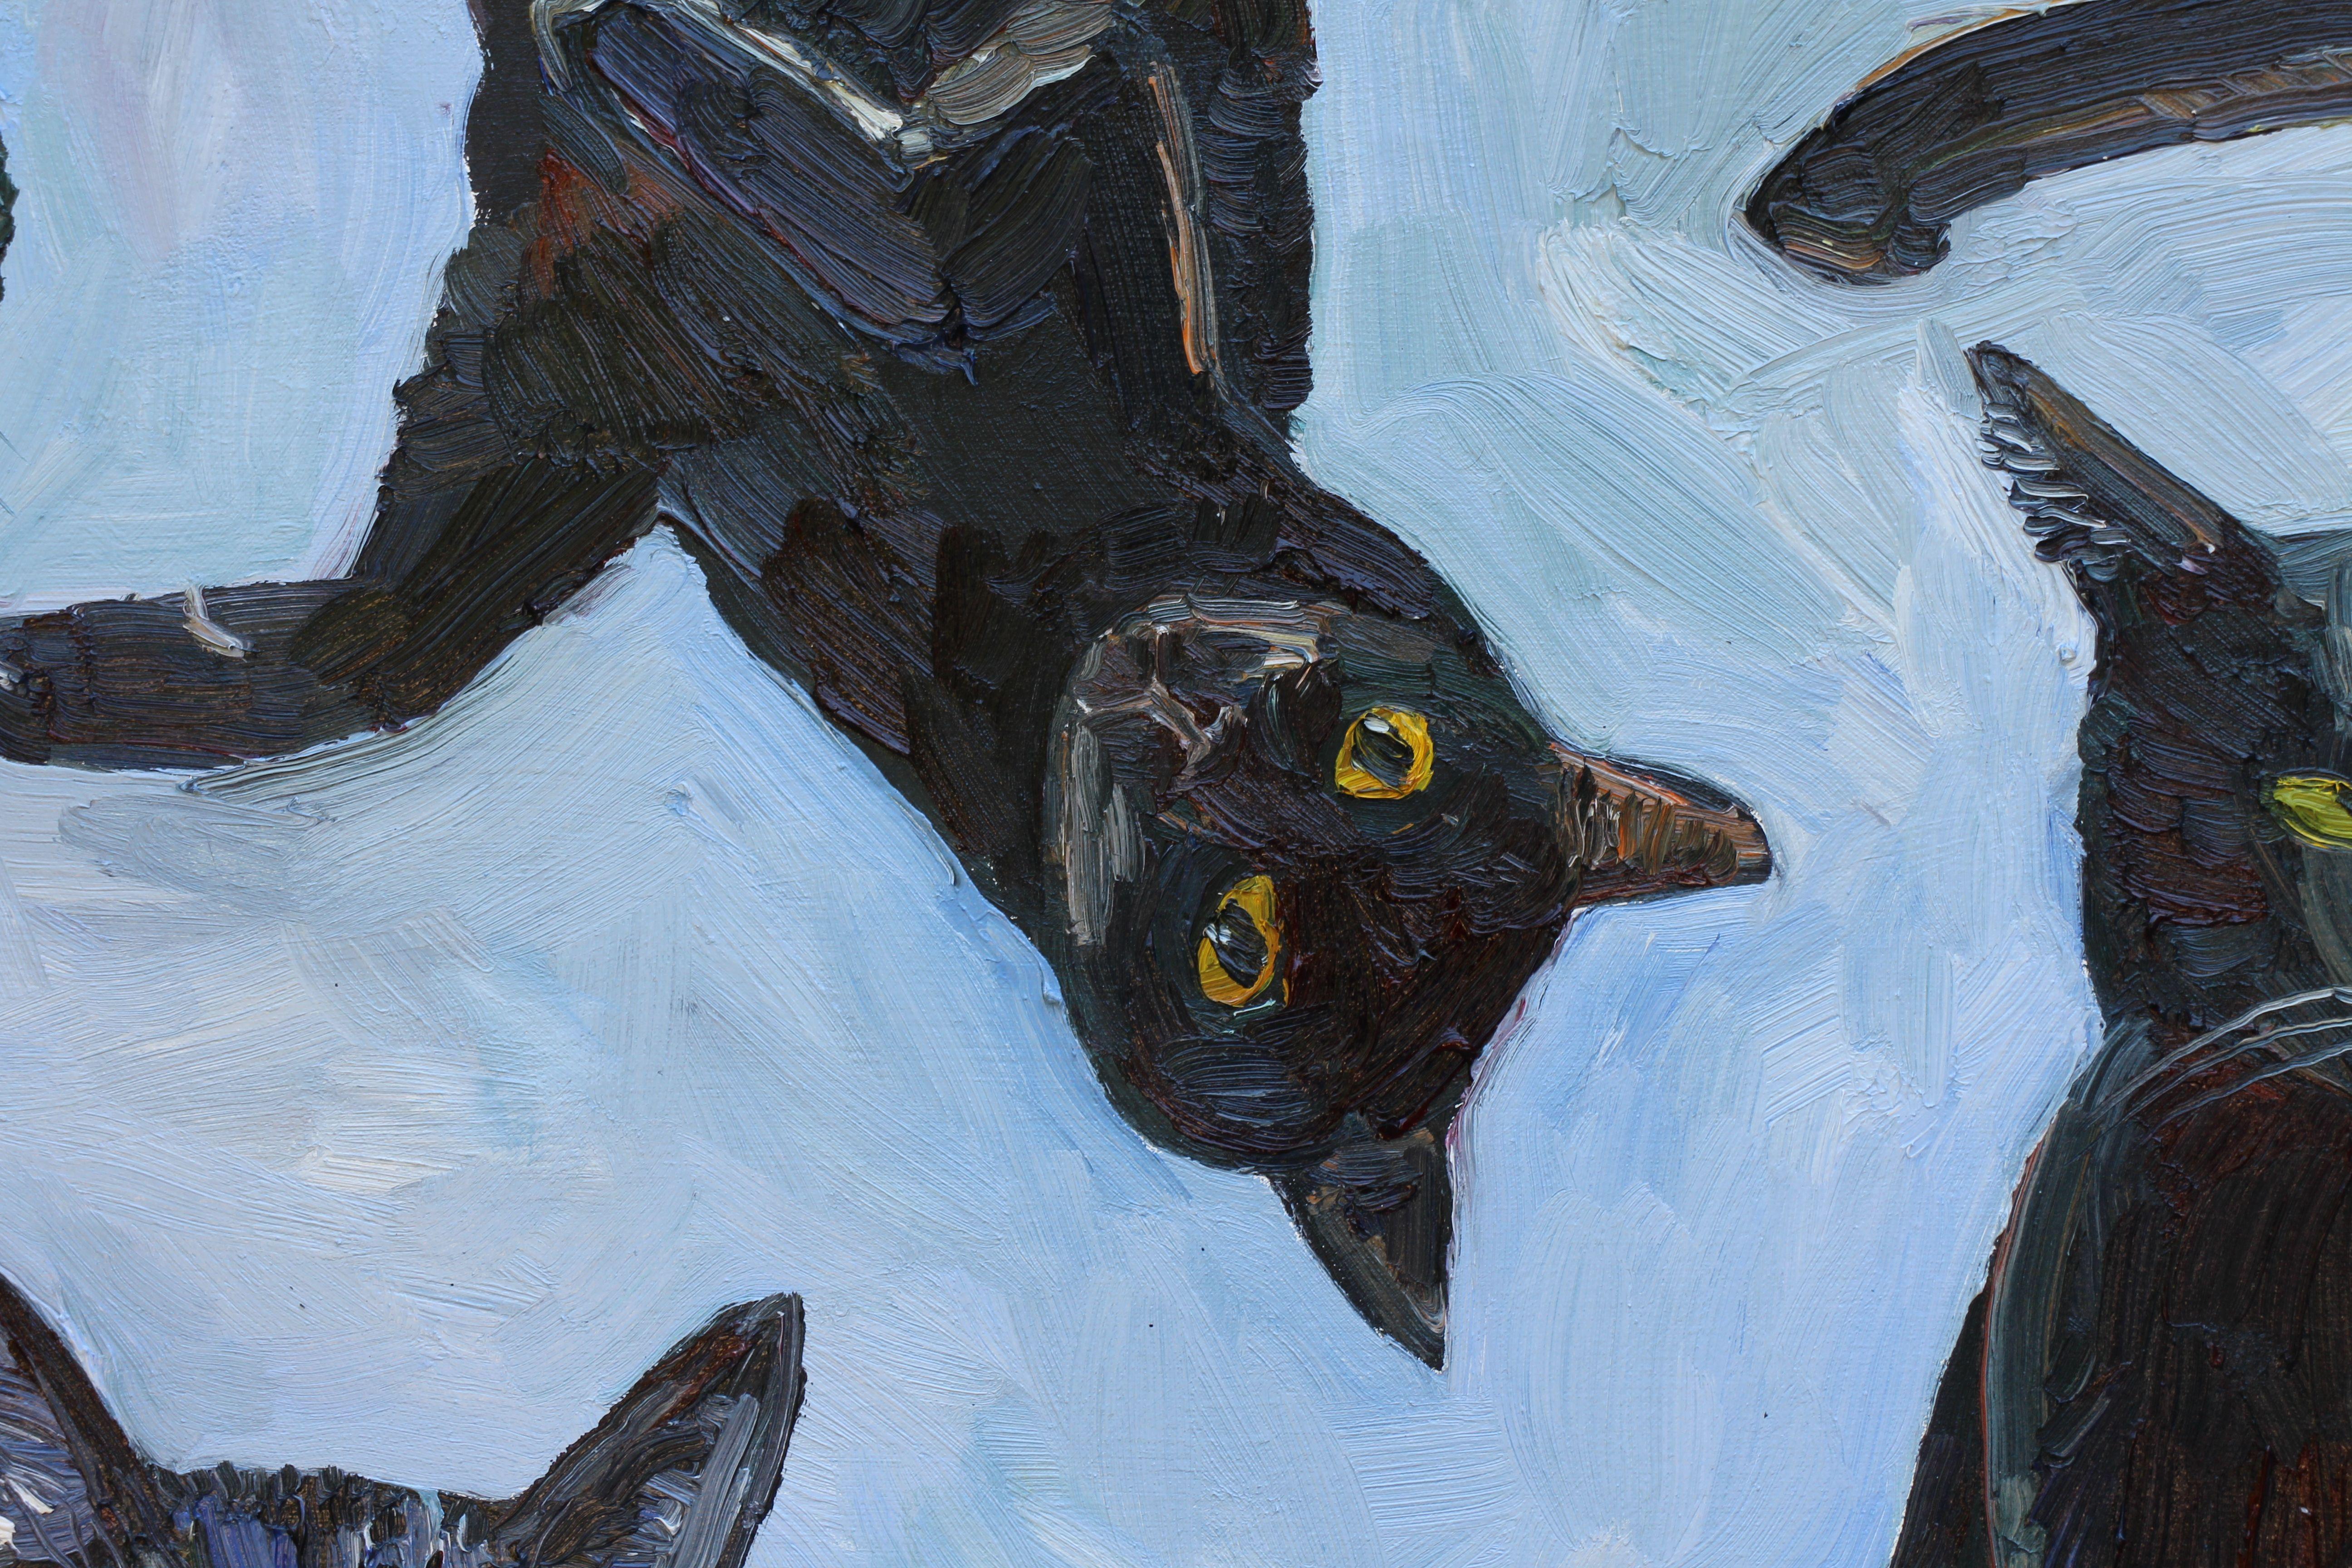 J'ai fait un projet Kickstarter où j'ai peint 100 portraits de chats. Le résultat final a été de peindre trois grands tableaux où je ne peindrais que des chats orange sur l'un d'entre eux et, sur les deux autres, que des chats noirs et des chats